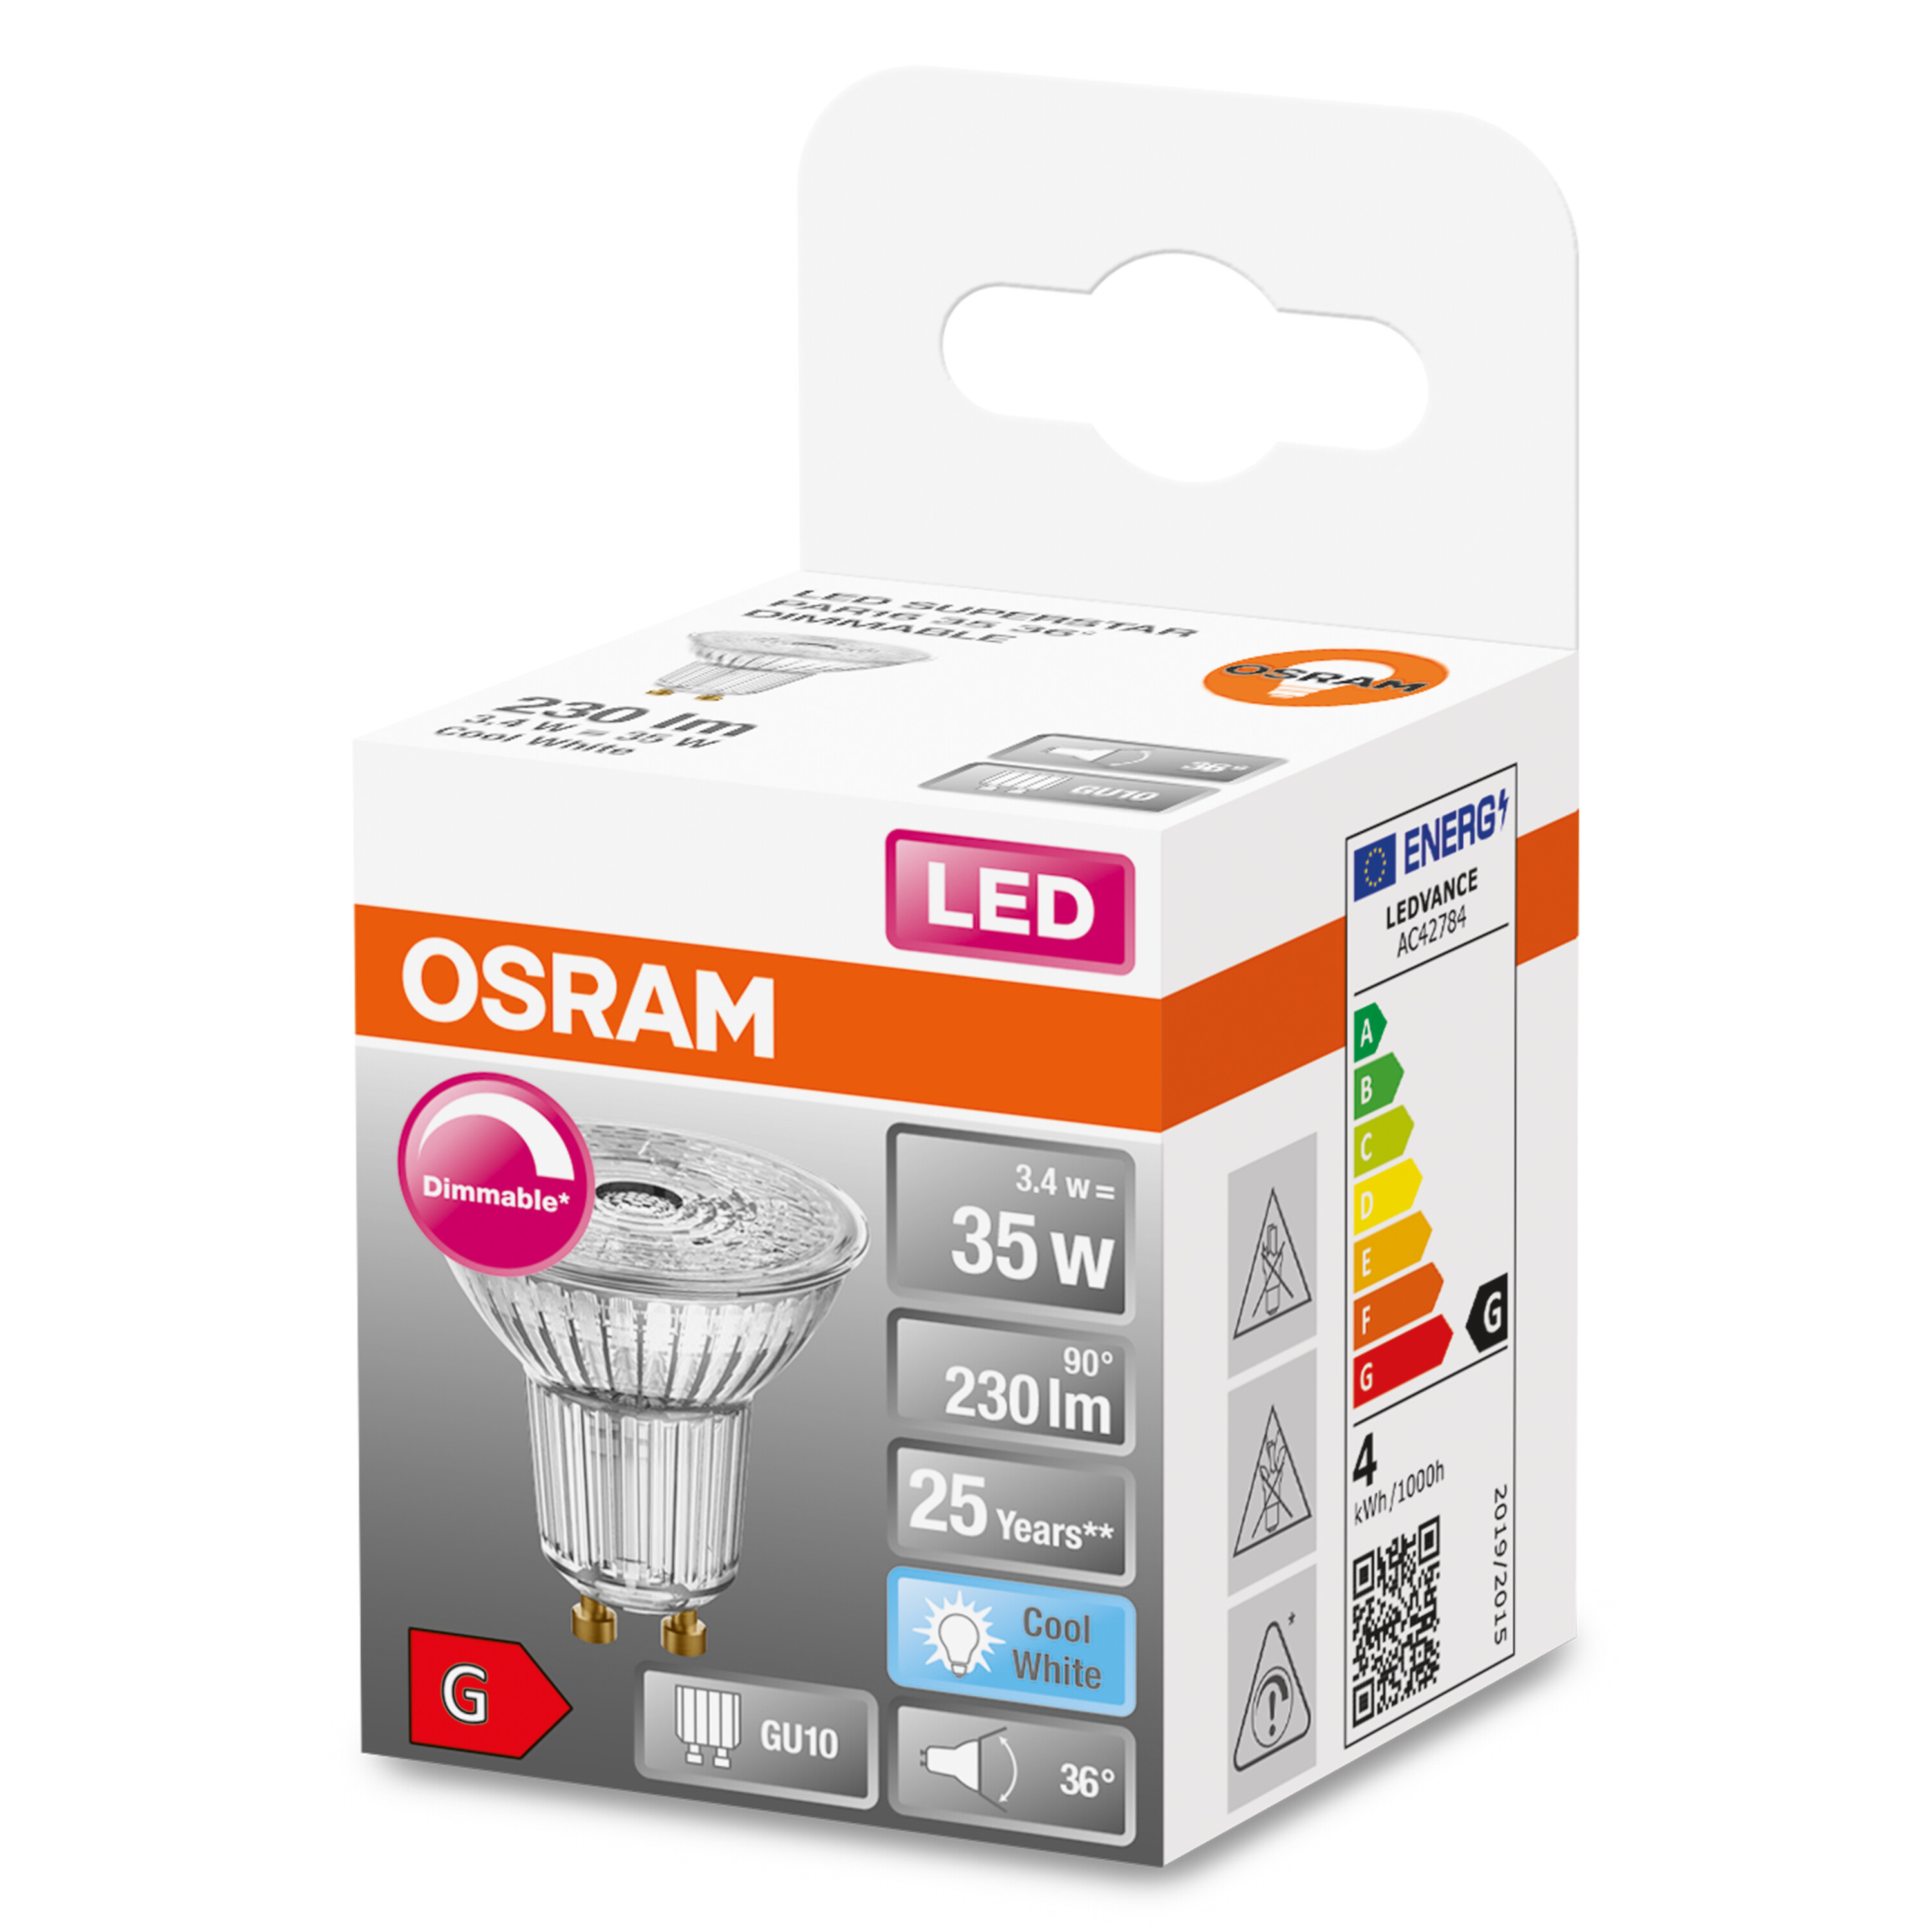 OSRAM  Lampe LED Lumen SUPERSTAR PAR16 230 LED Kaltweiß